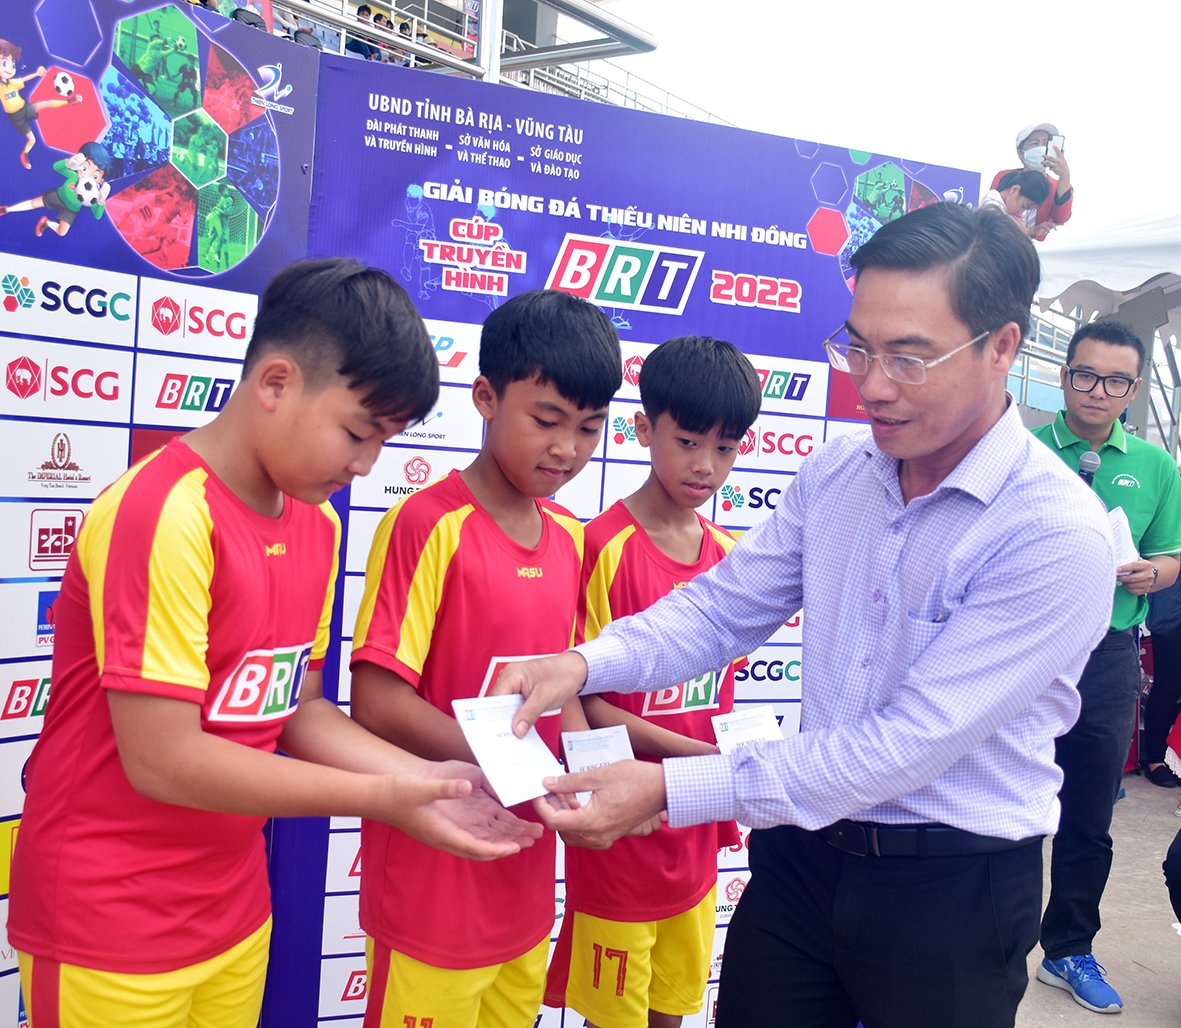 Ông Nguyễn Thành Nam, Phó Chủ tịch UBND TX. Phú Mỹ trao quà cho các cầu thủ có hoàn cảnh khó khăn của thị xã tham dự BRT Cup 2022.